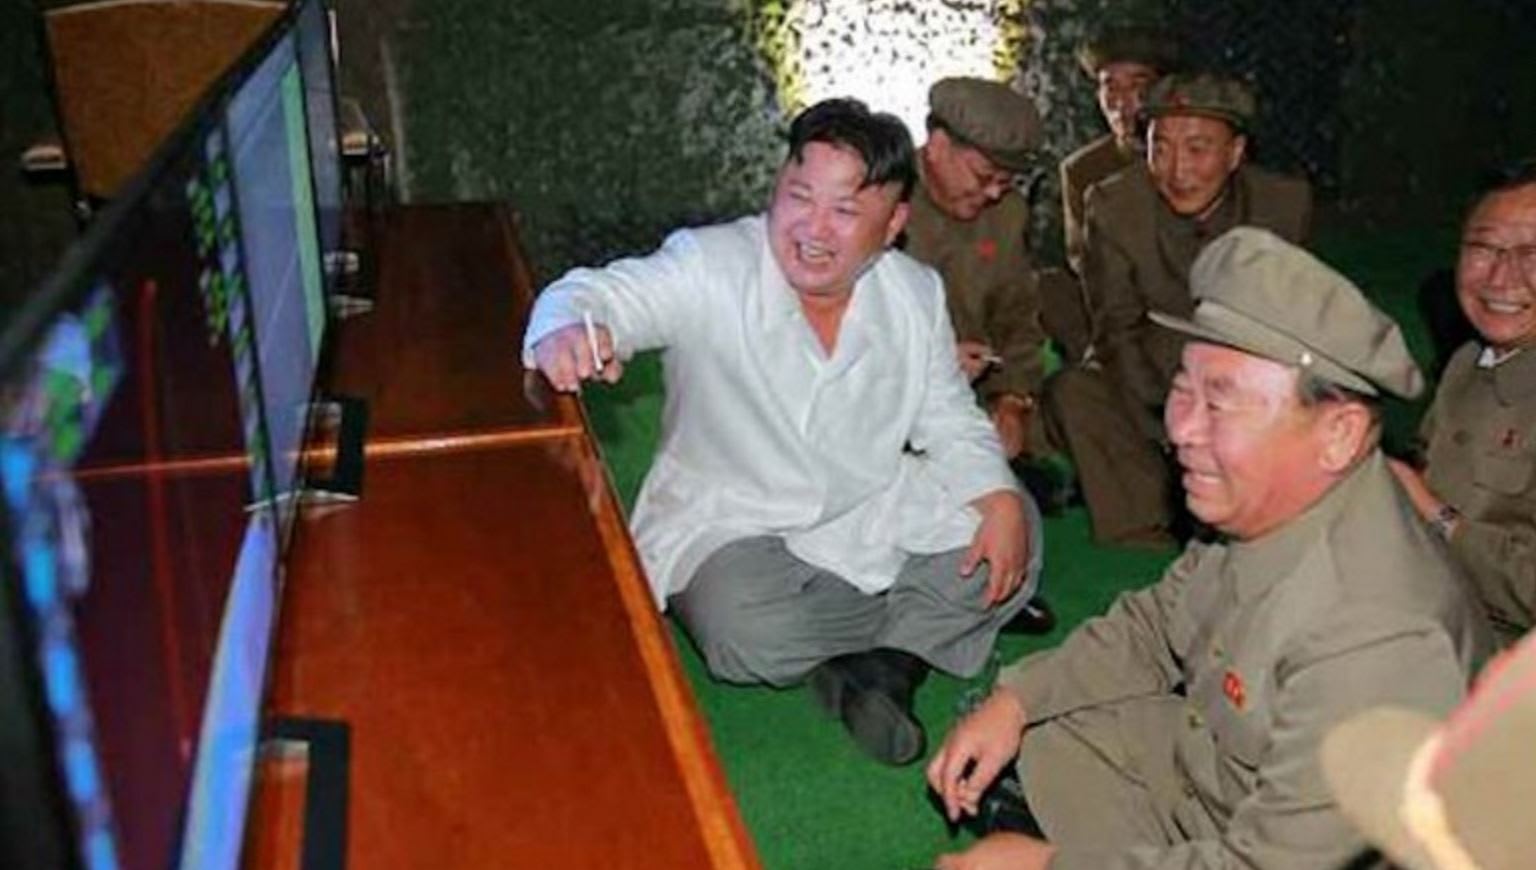 تجارب كوريا الشمالية الصاروخية تُسعد الزعيم.. وكيم جونغ أون يهدد أمريكا وكوريا الجنوبية بـ"الضربات القاتلة"